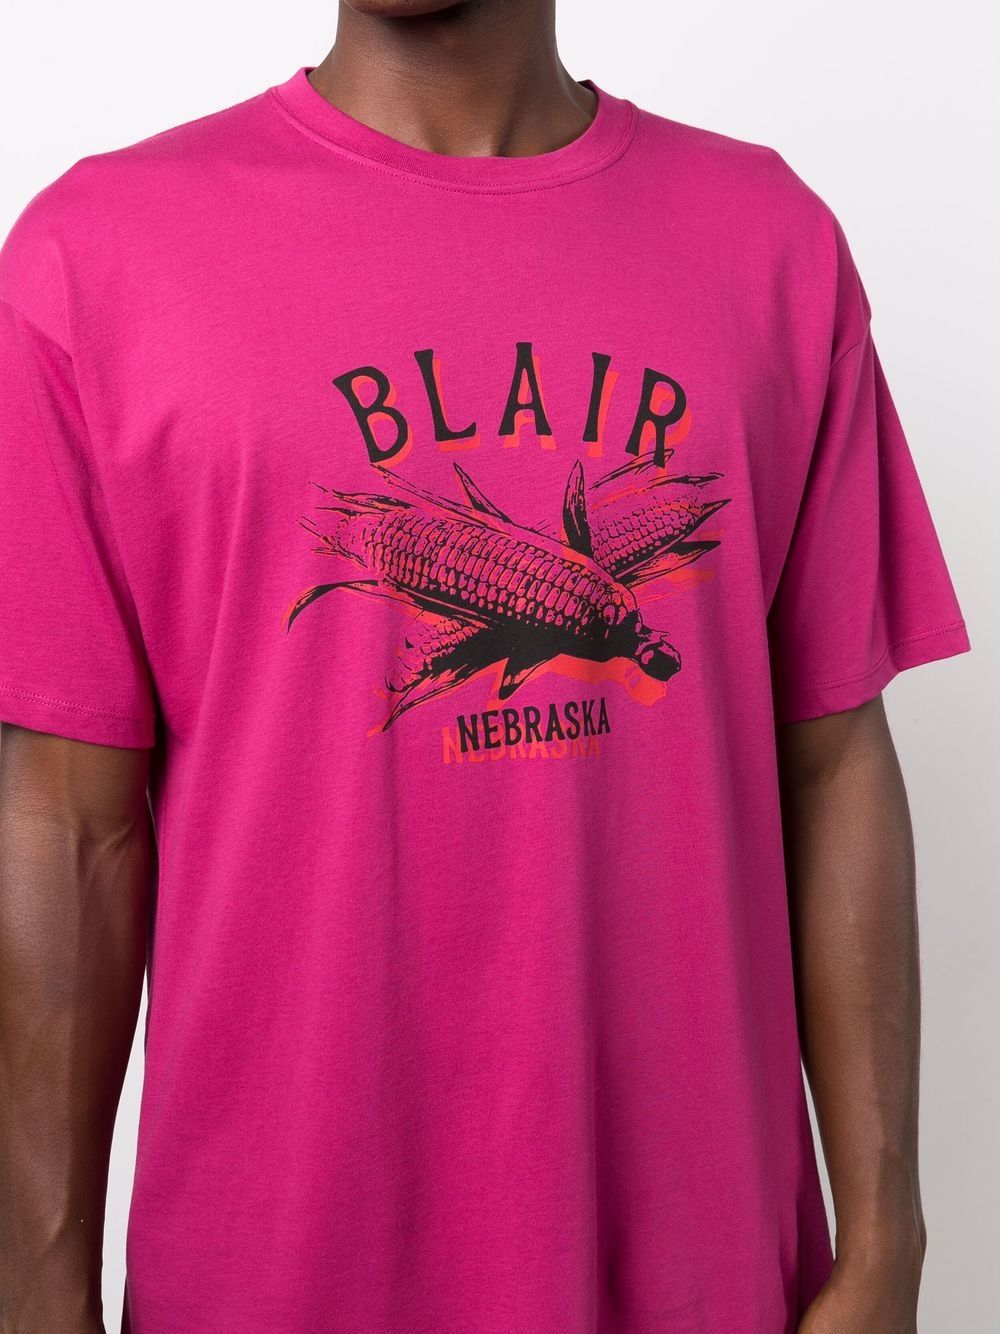 新品 RAF SIMONS 21AW Blair Nebraska Tシャツ M